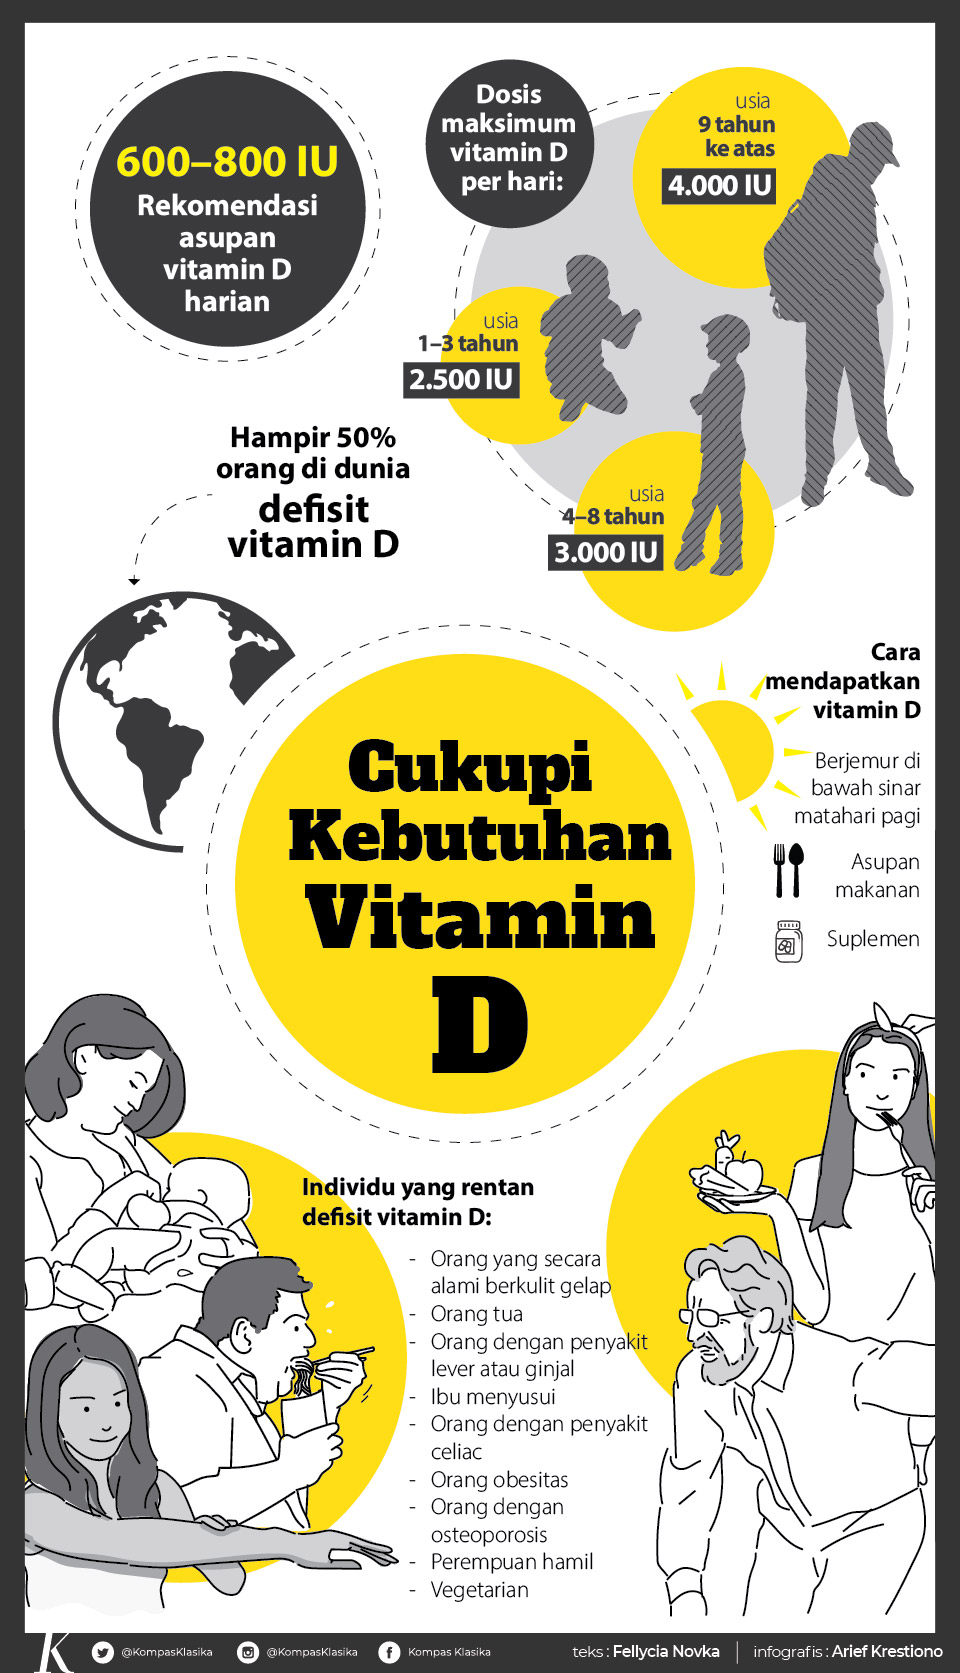 Manfaat vitamin D